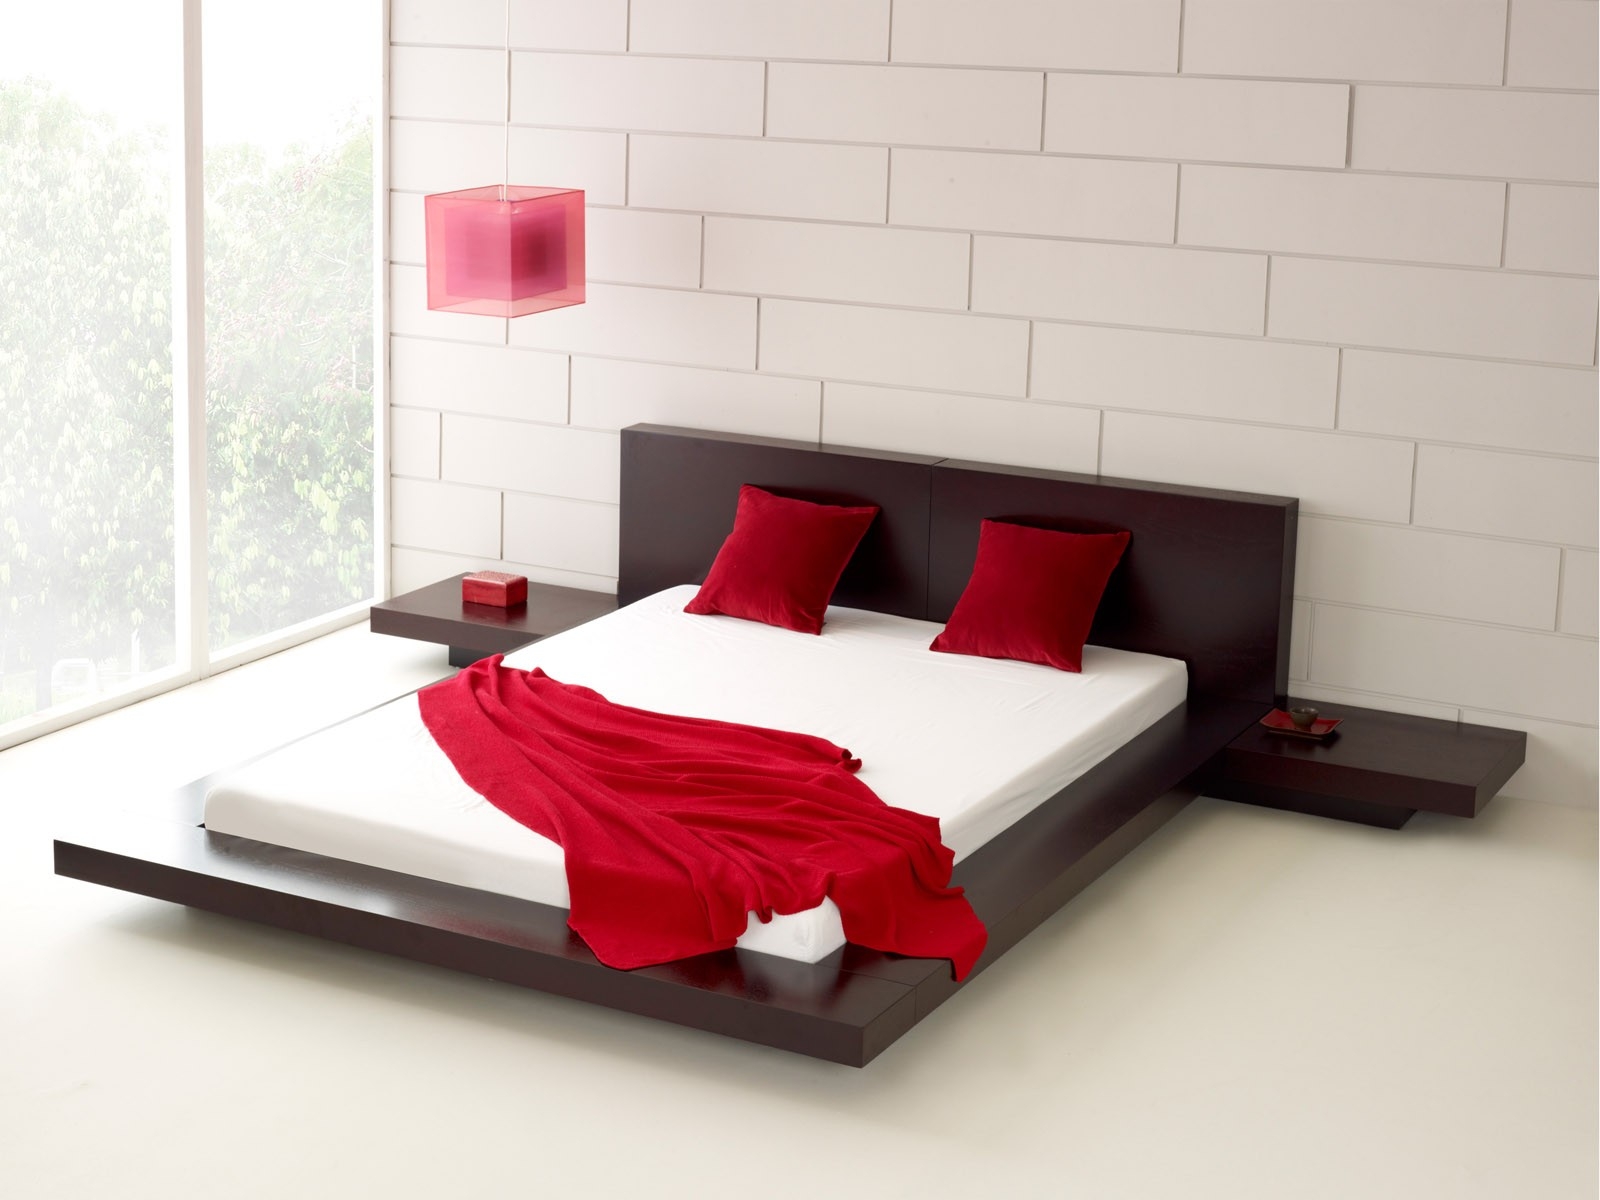 Japanese Platform Beds Visualhunt, Japanese Bed Frame King